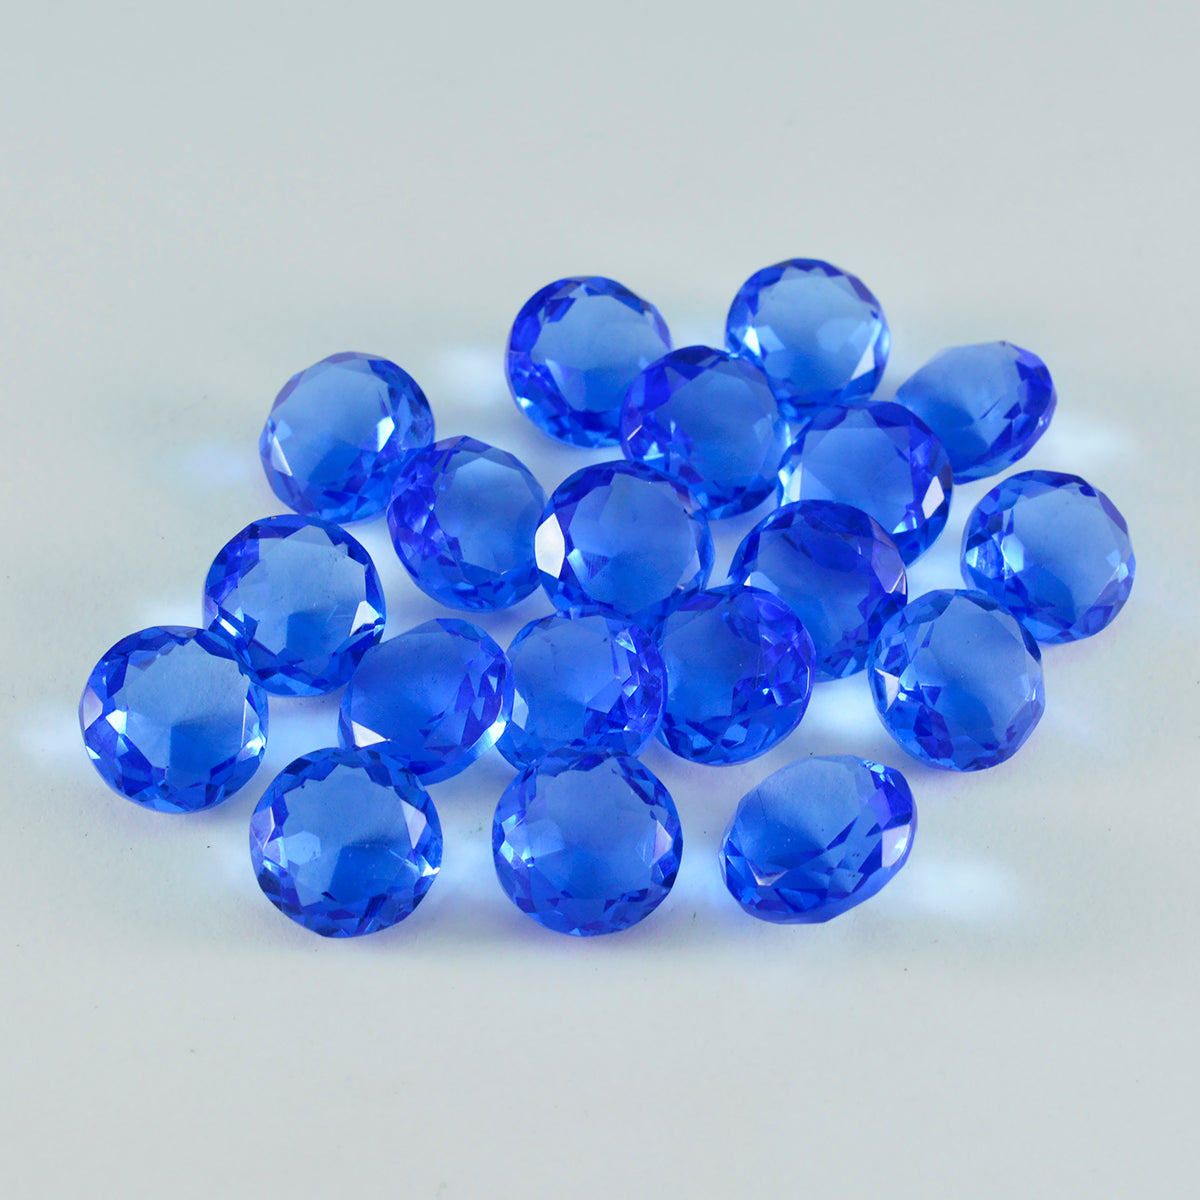 Riyogems 1 Stück blauer Saphir, CZ, facettiert, 6 x 6 mm, runde Form, süßer Qualitätsedelstein